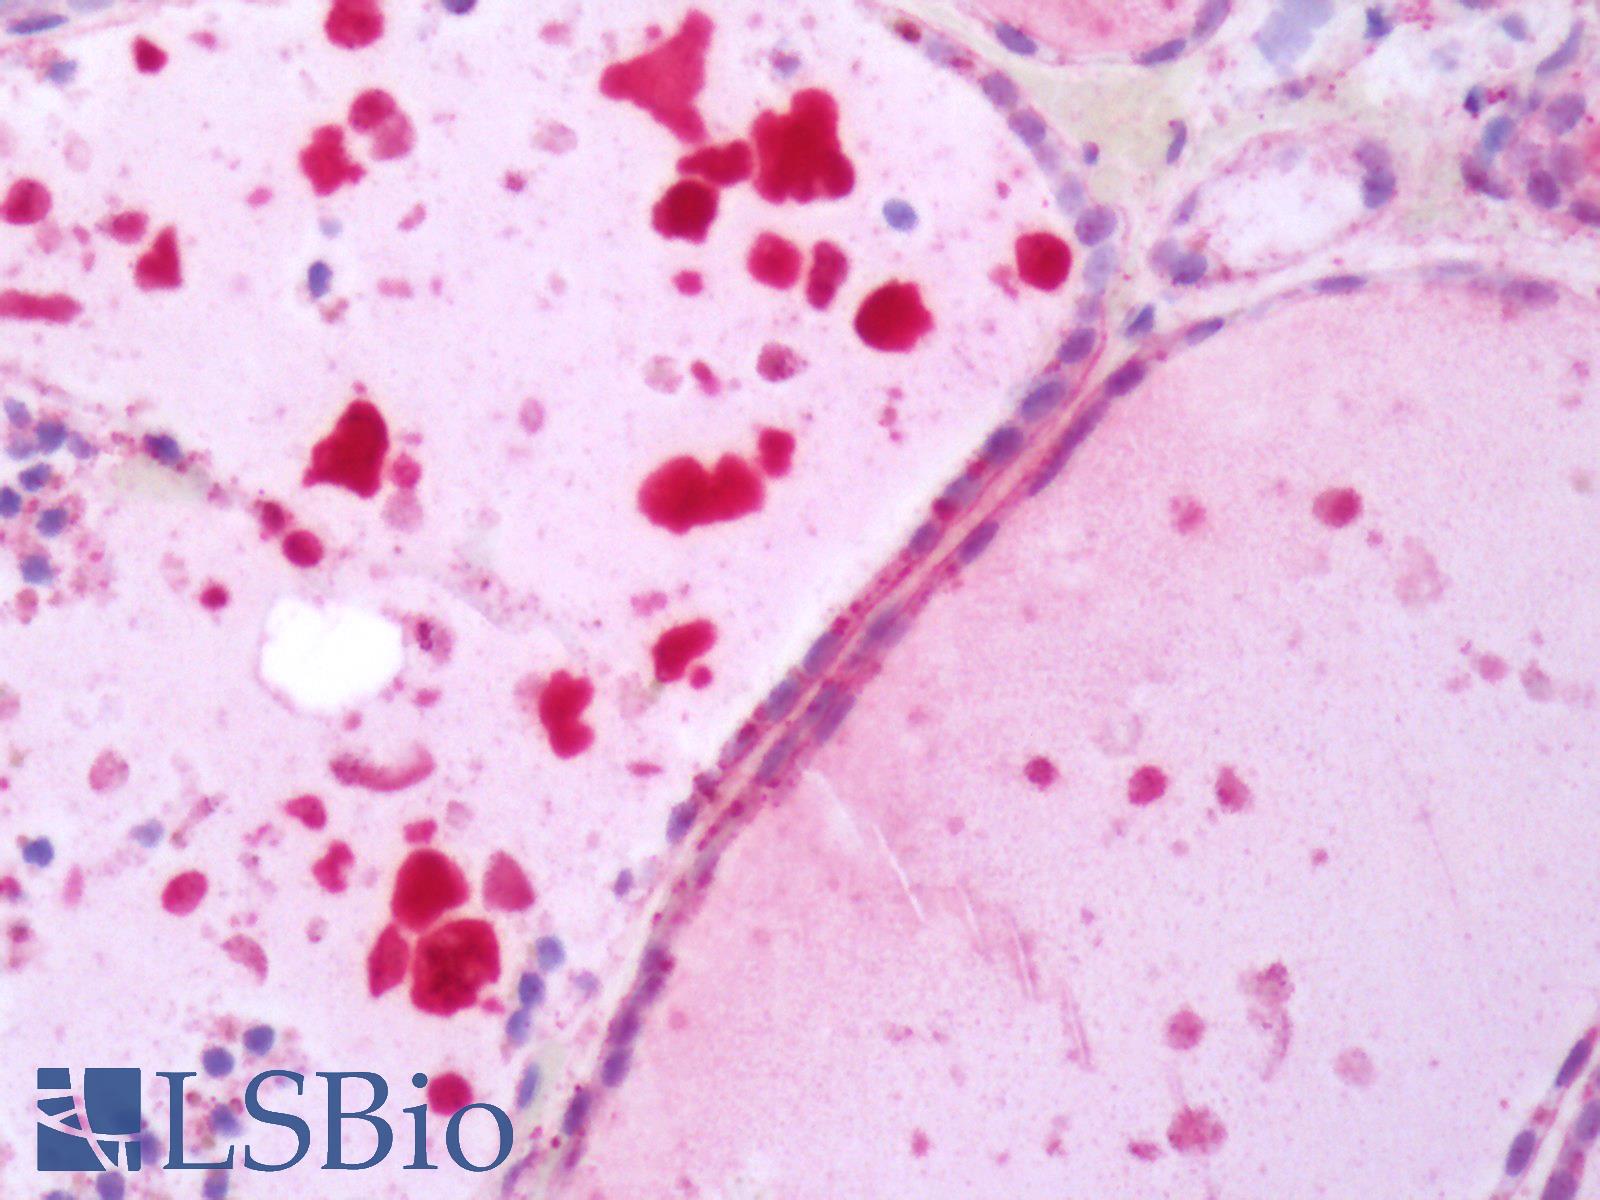 TSH Receptor / TSHR Antibody - Human Thyroid: Formalin-Fixed, Paraffin-Embedded (FFPE)